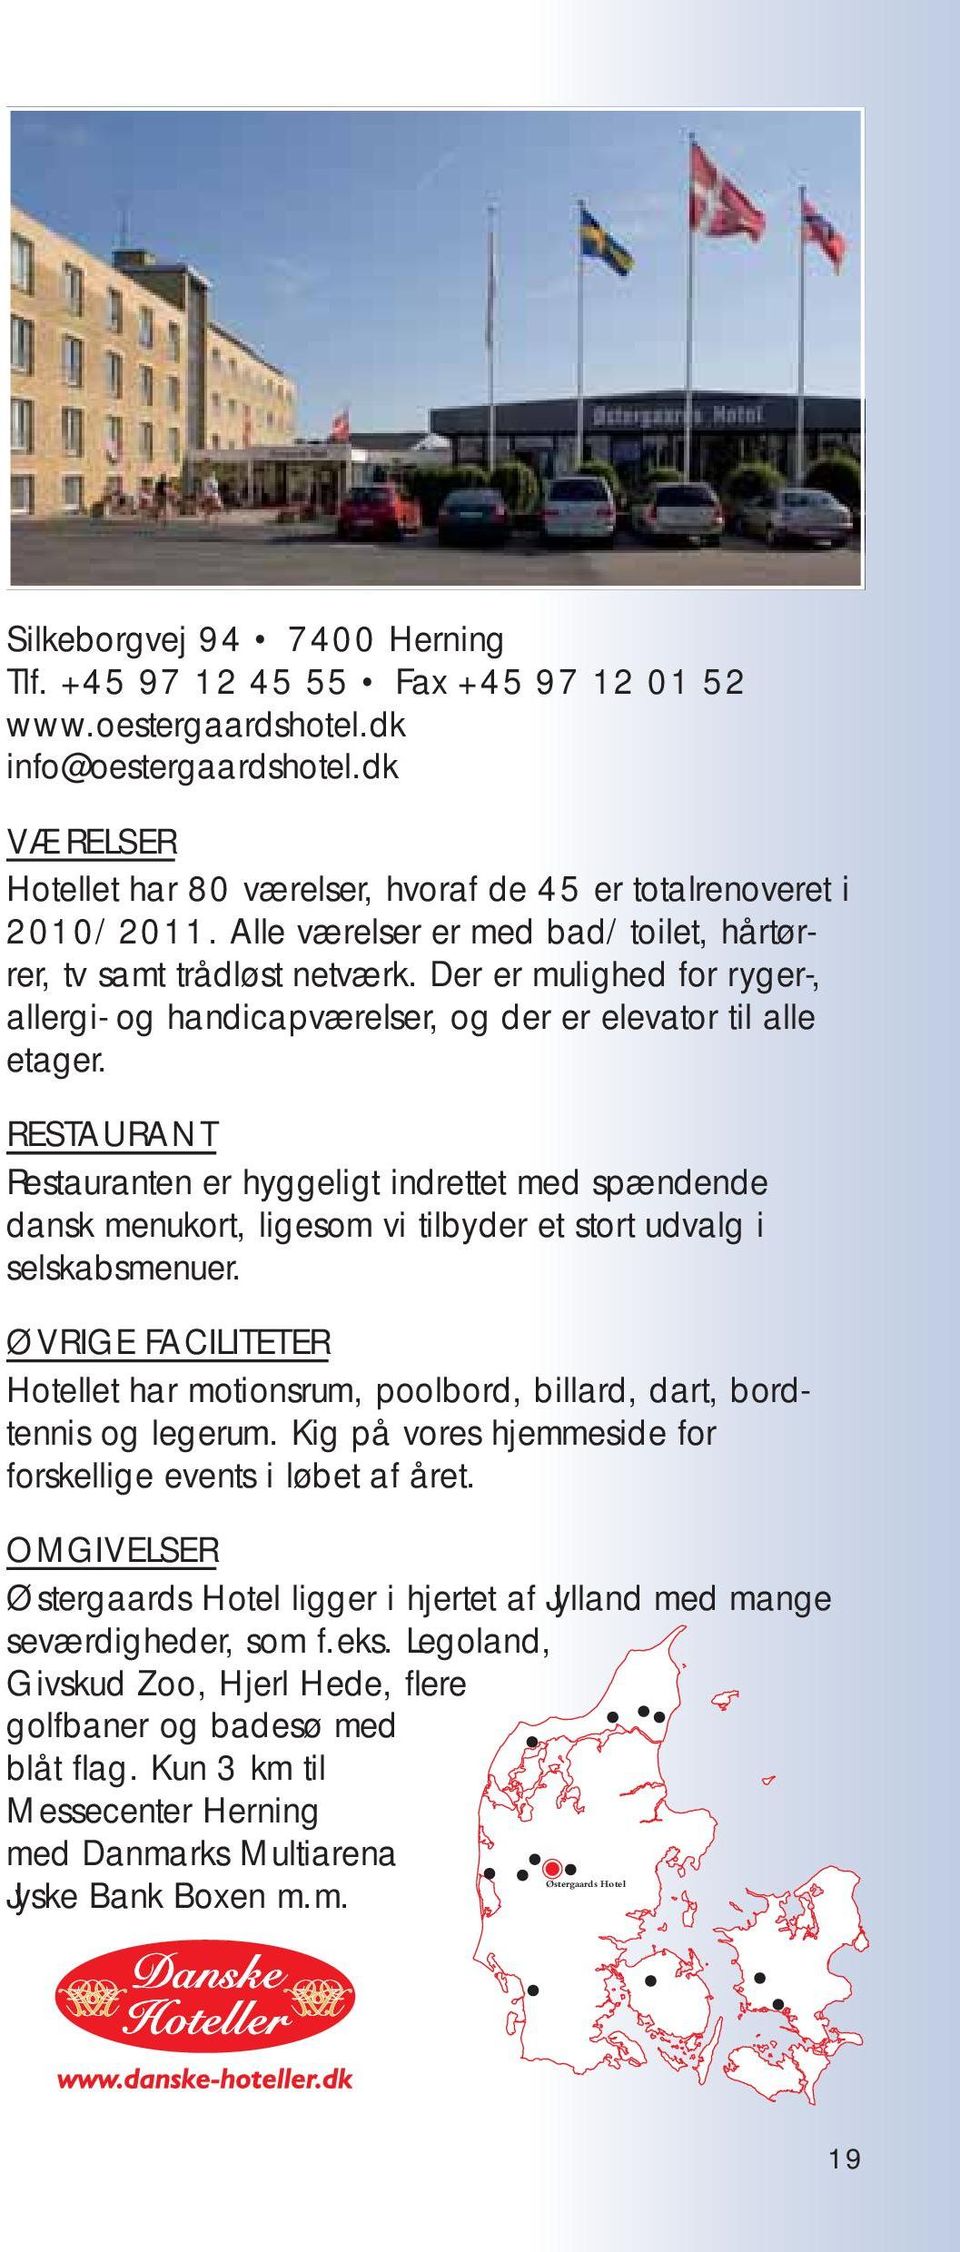 RESTAURANT Restauranten er hyggeligt indrettet med spændende dansk menukort, ligesom vi tilbyder et stort udvalg i selskabsmenuer.